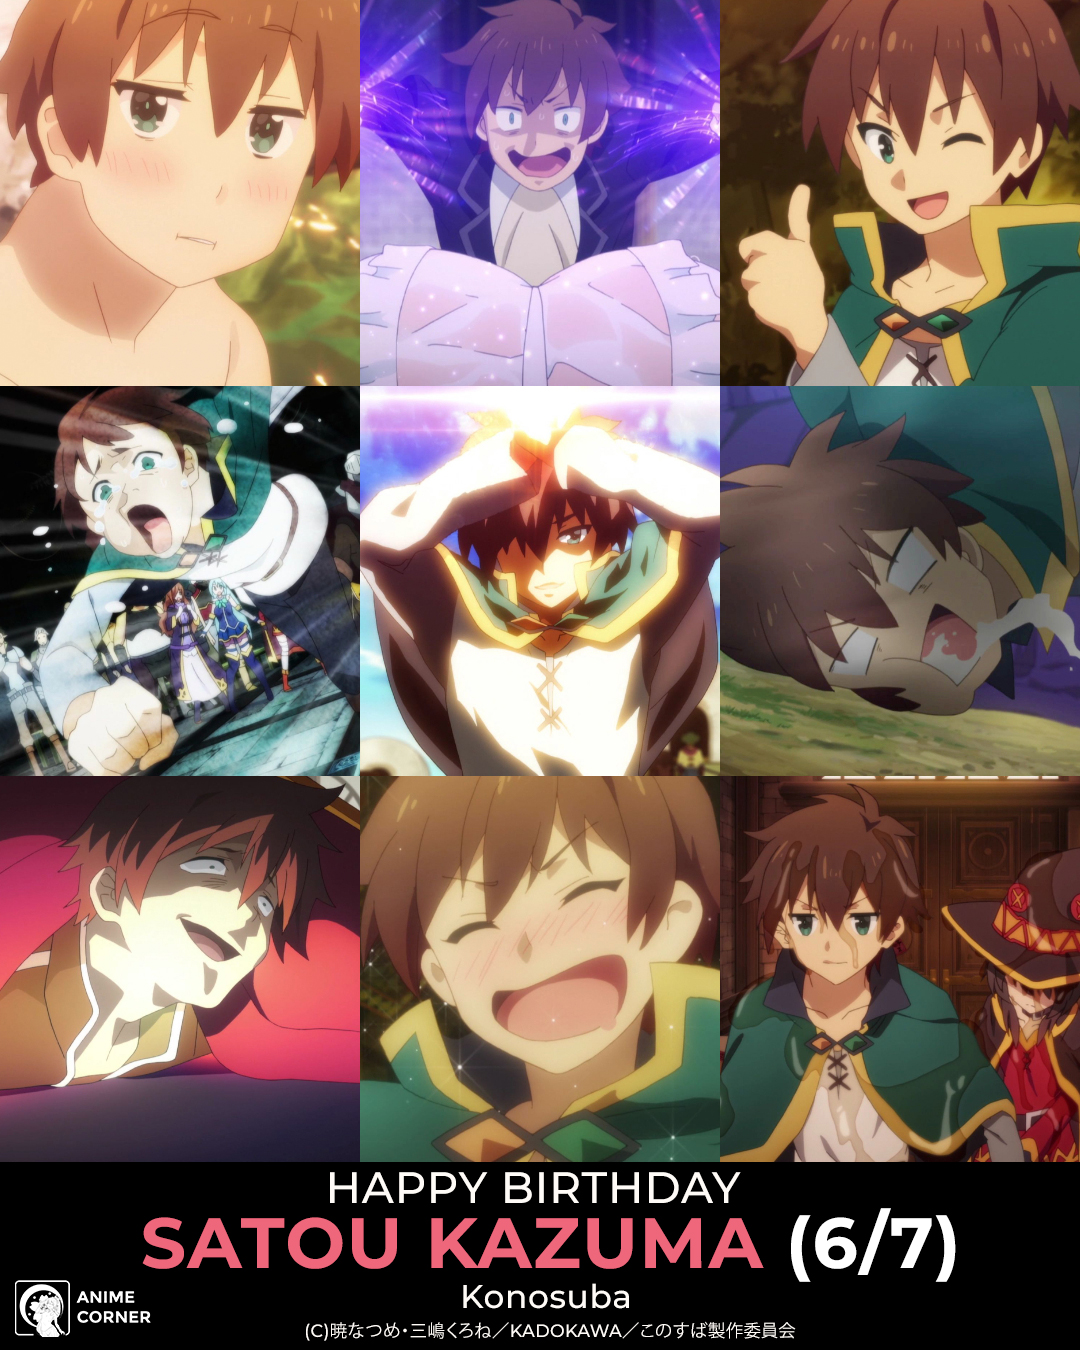 Anime Trending on X: (June 7) Happy Birthday to Kazuma Satou